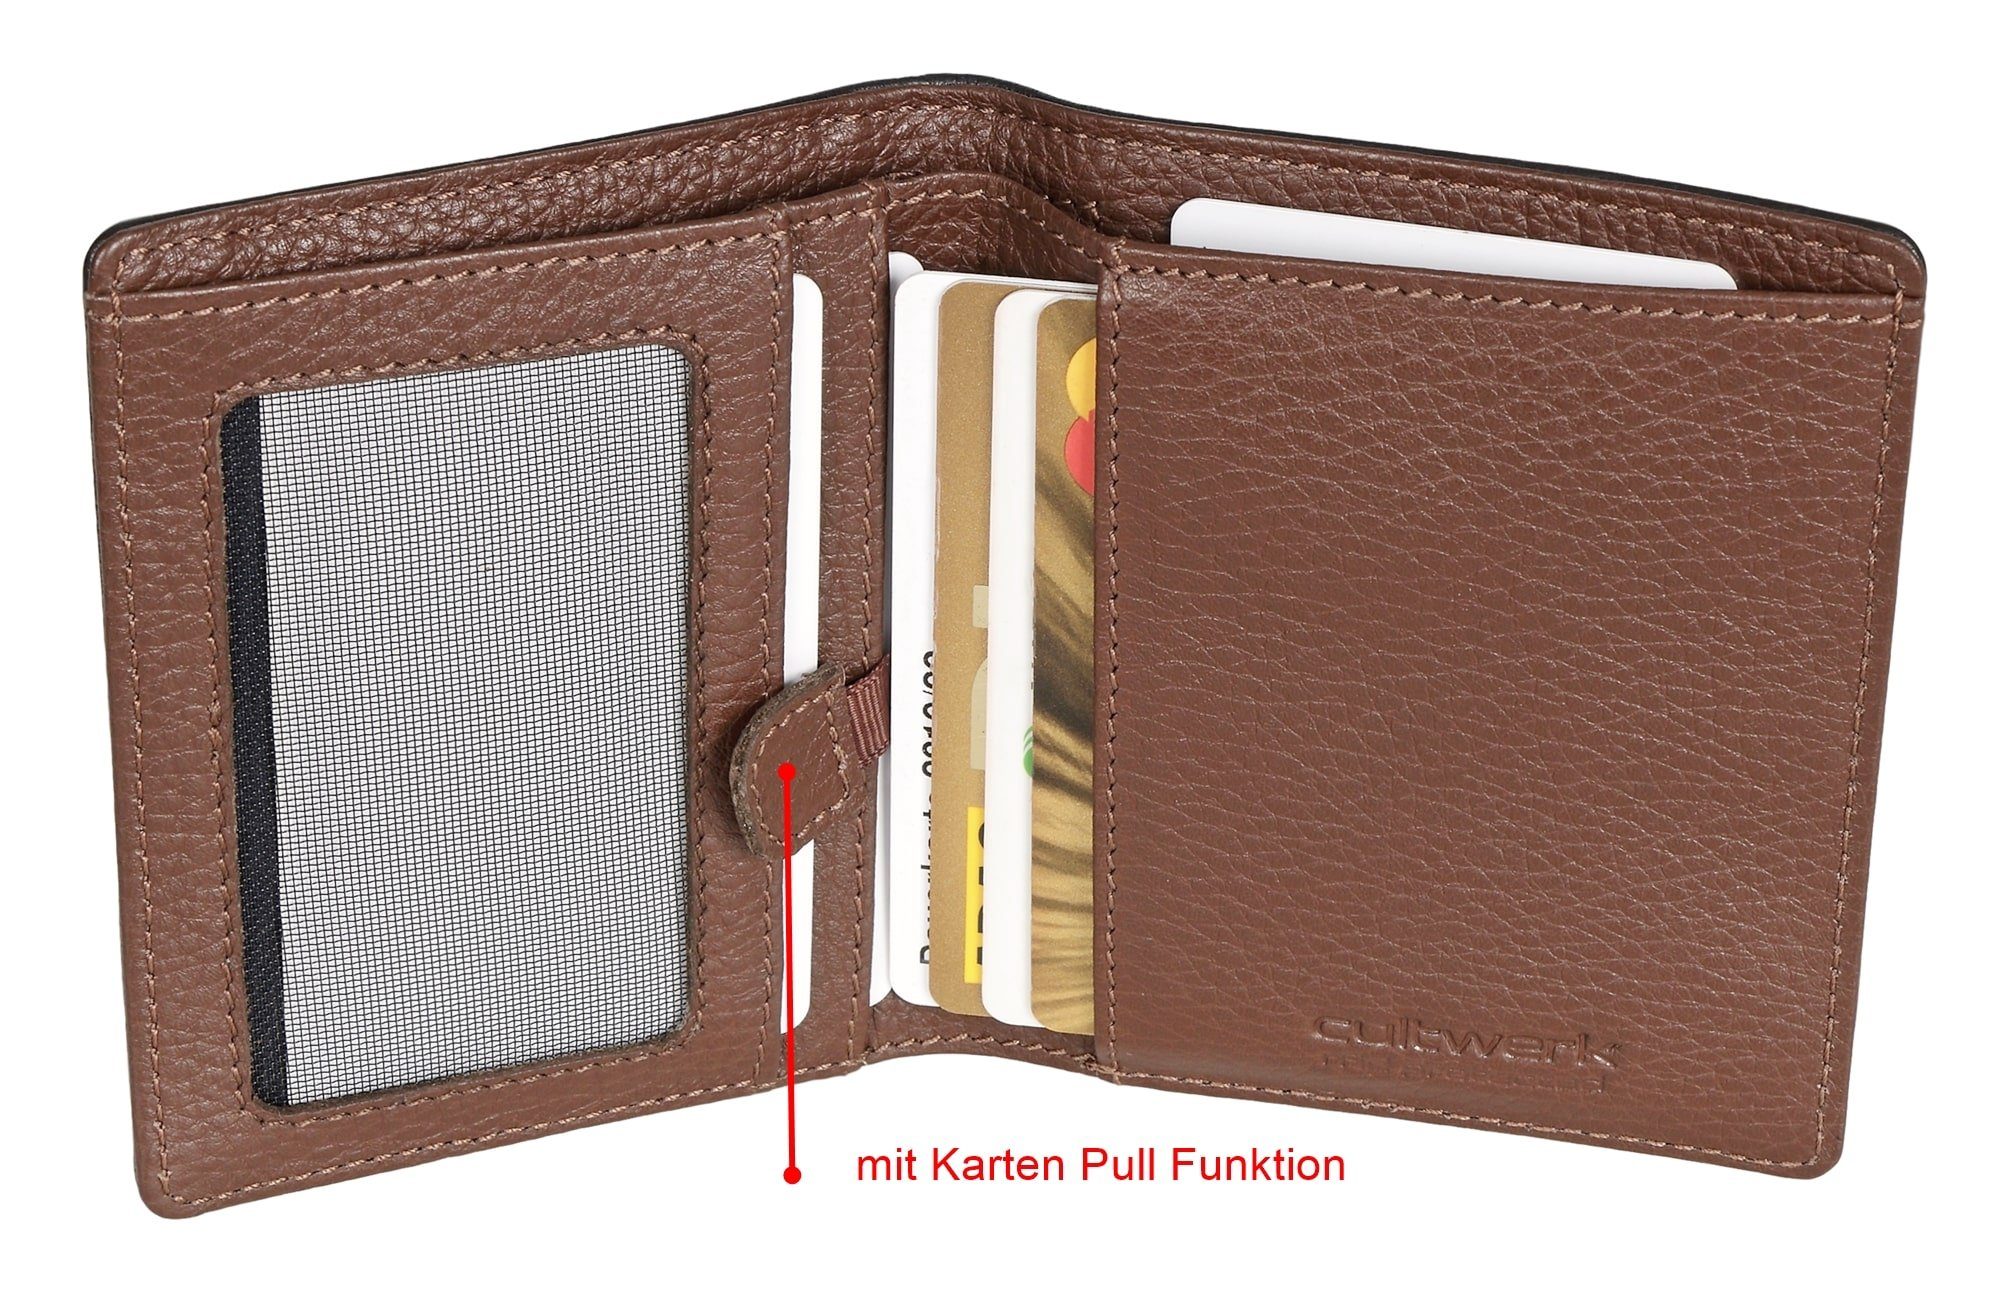 Herren Farbe Echtleder Geldbörse Funktion Braun Kartenfächern, Bear mit Schwarz-Braun Cultwerk 5 und RFID-Schutz Brown IV Pull Card Schwarz aus Modell für mit